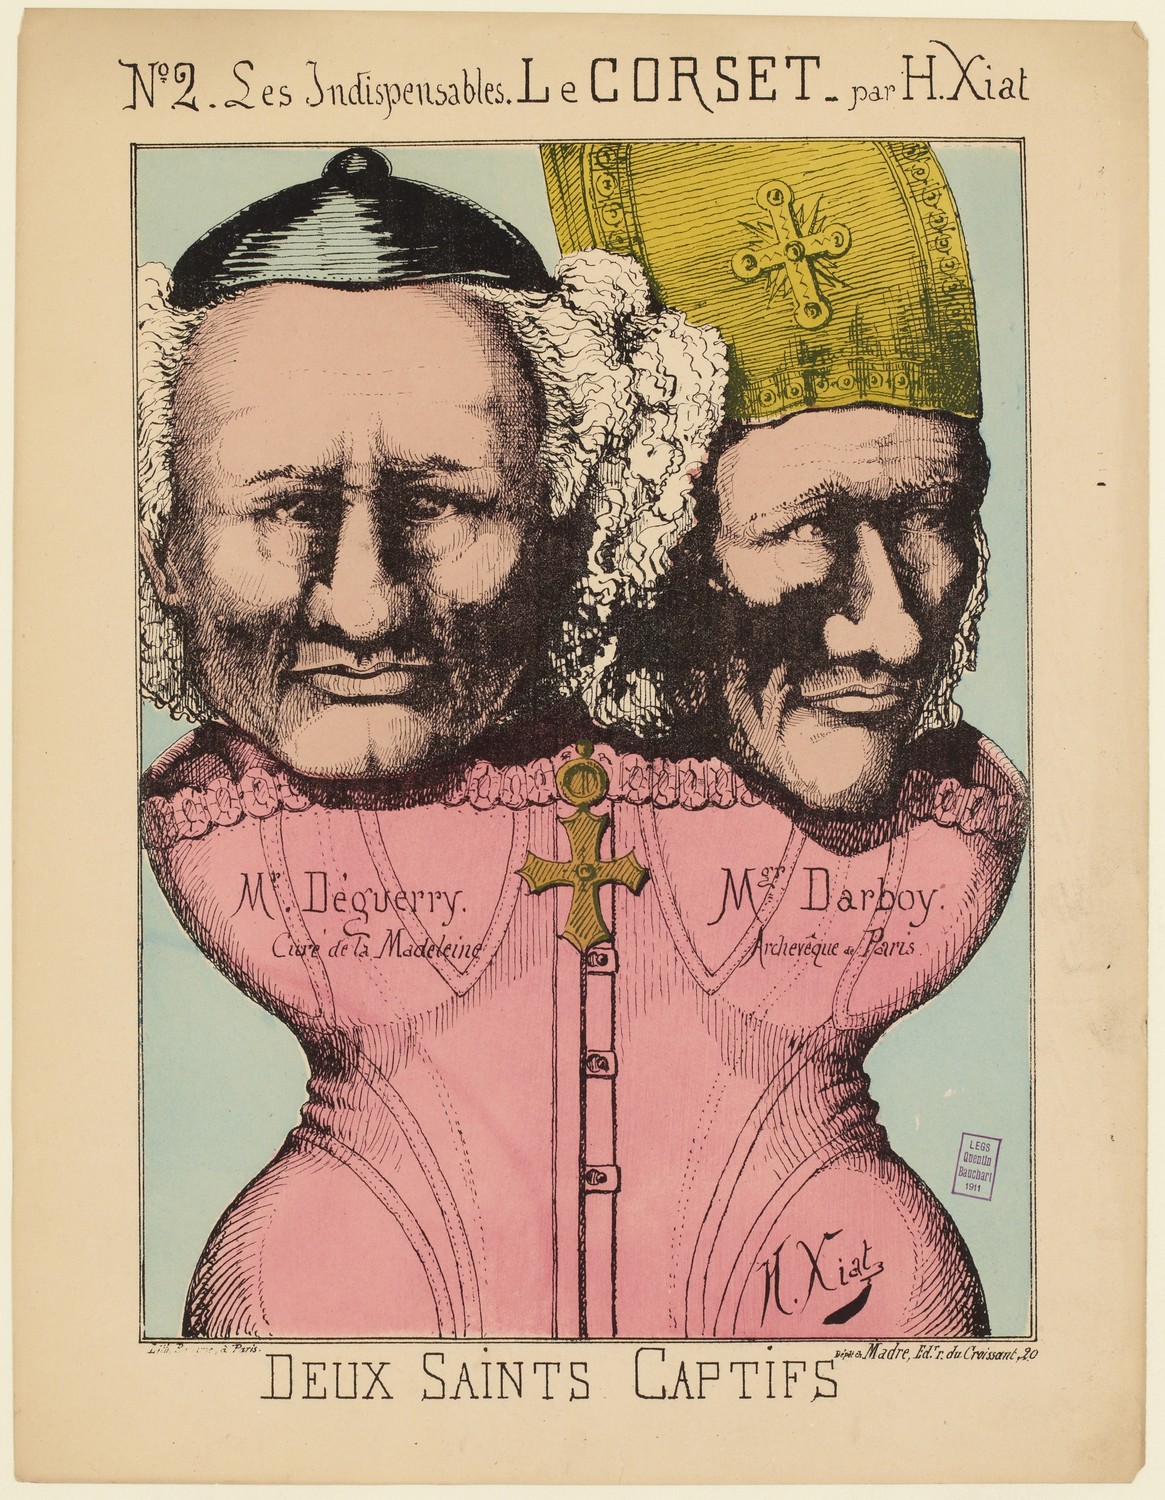 fig. 5 bis : H. Xiat, « Deux saints captifs », Les indispensables. Le corset, n° 2 (source : © Musée Carnavalet – Histoire de Paris)